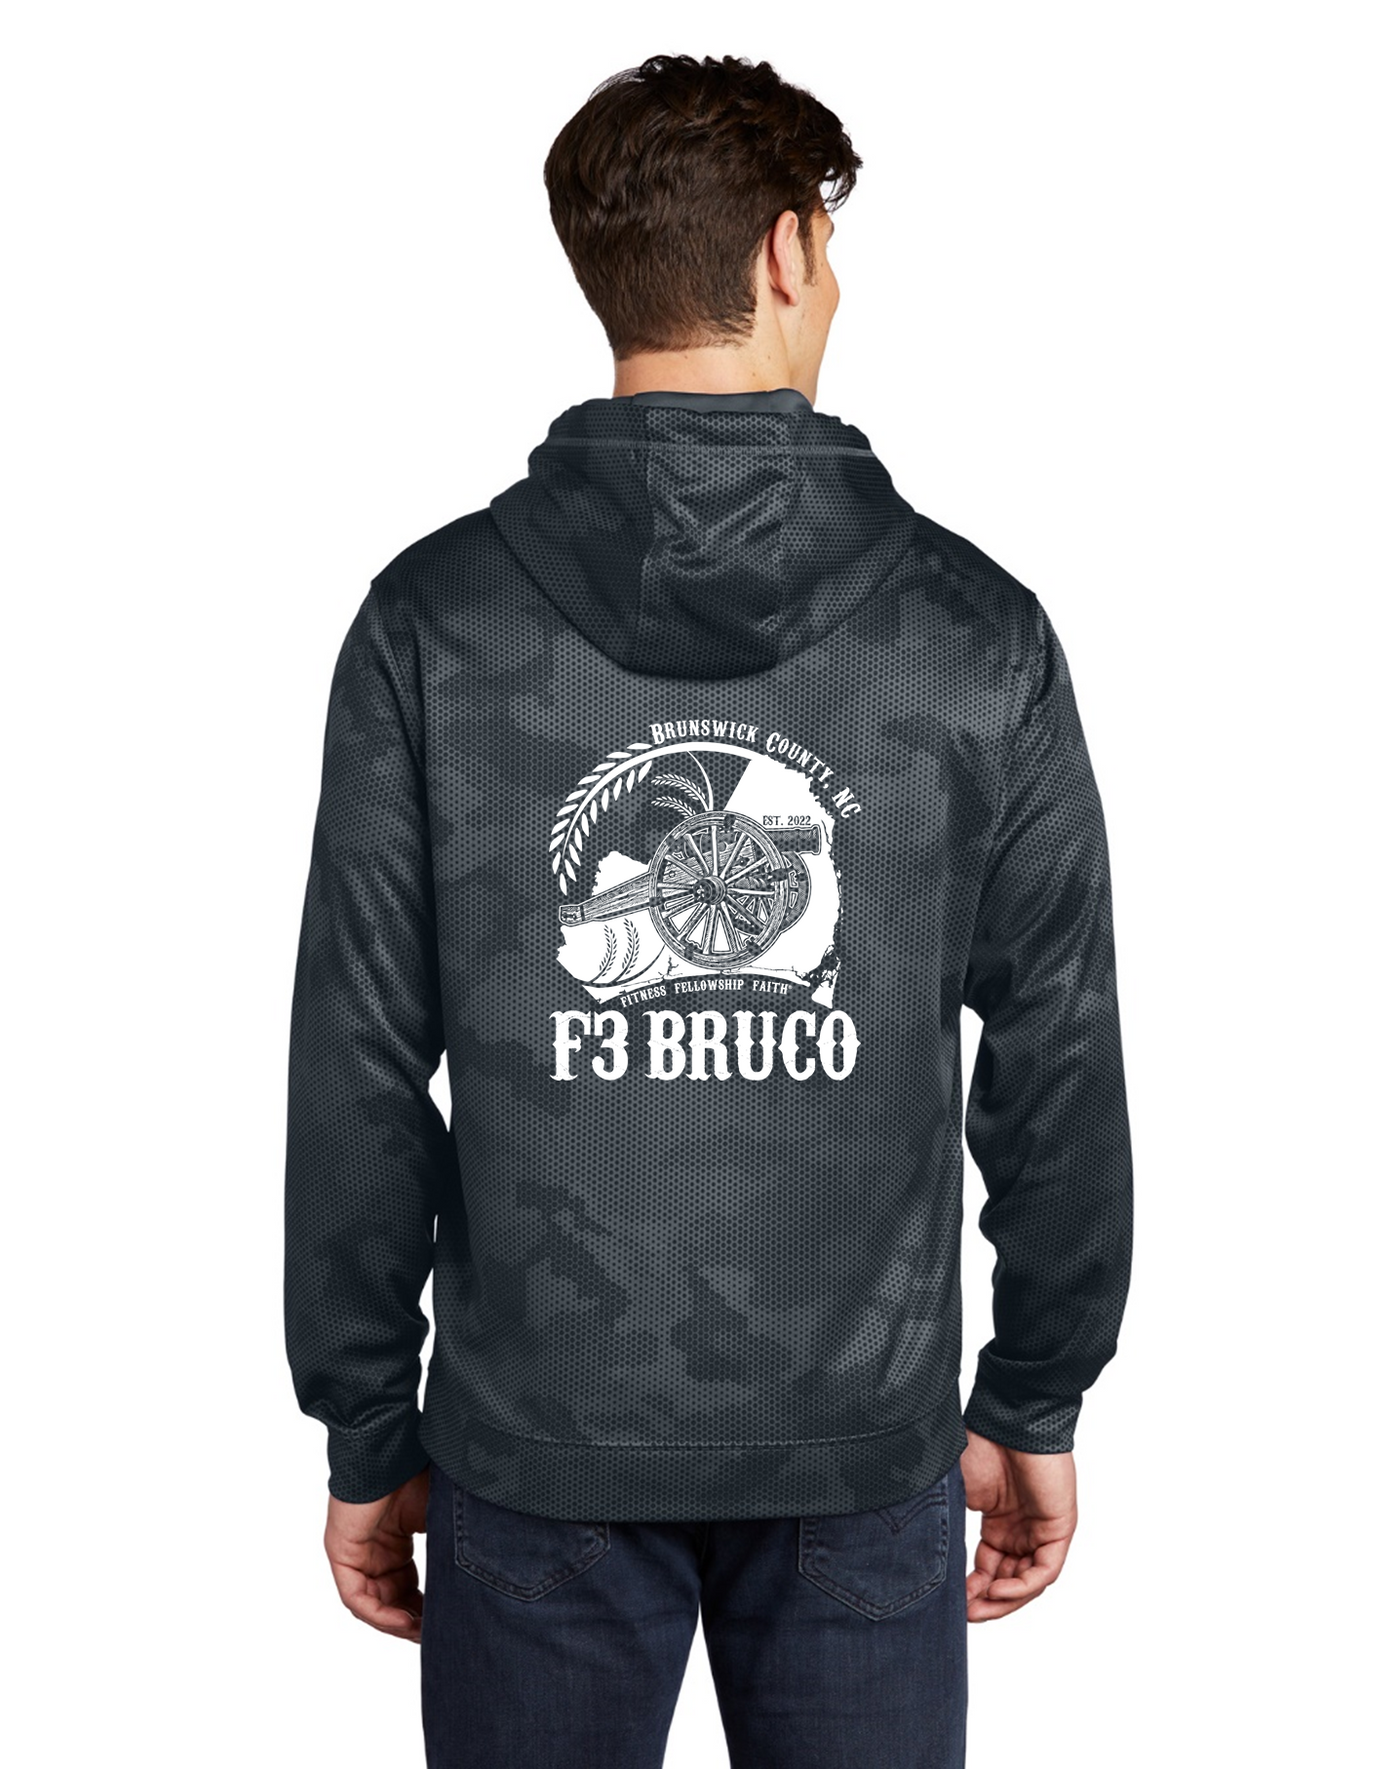 F3 BRUCO Winter Pre-order November 2023